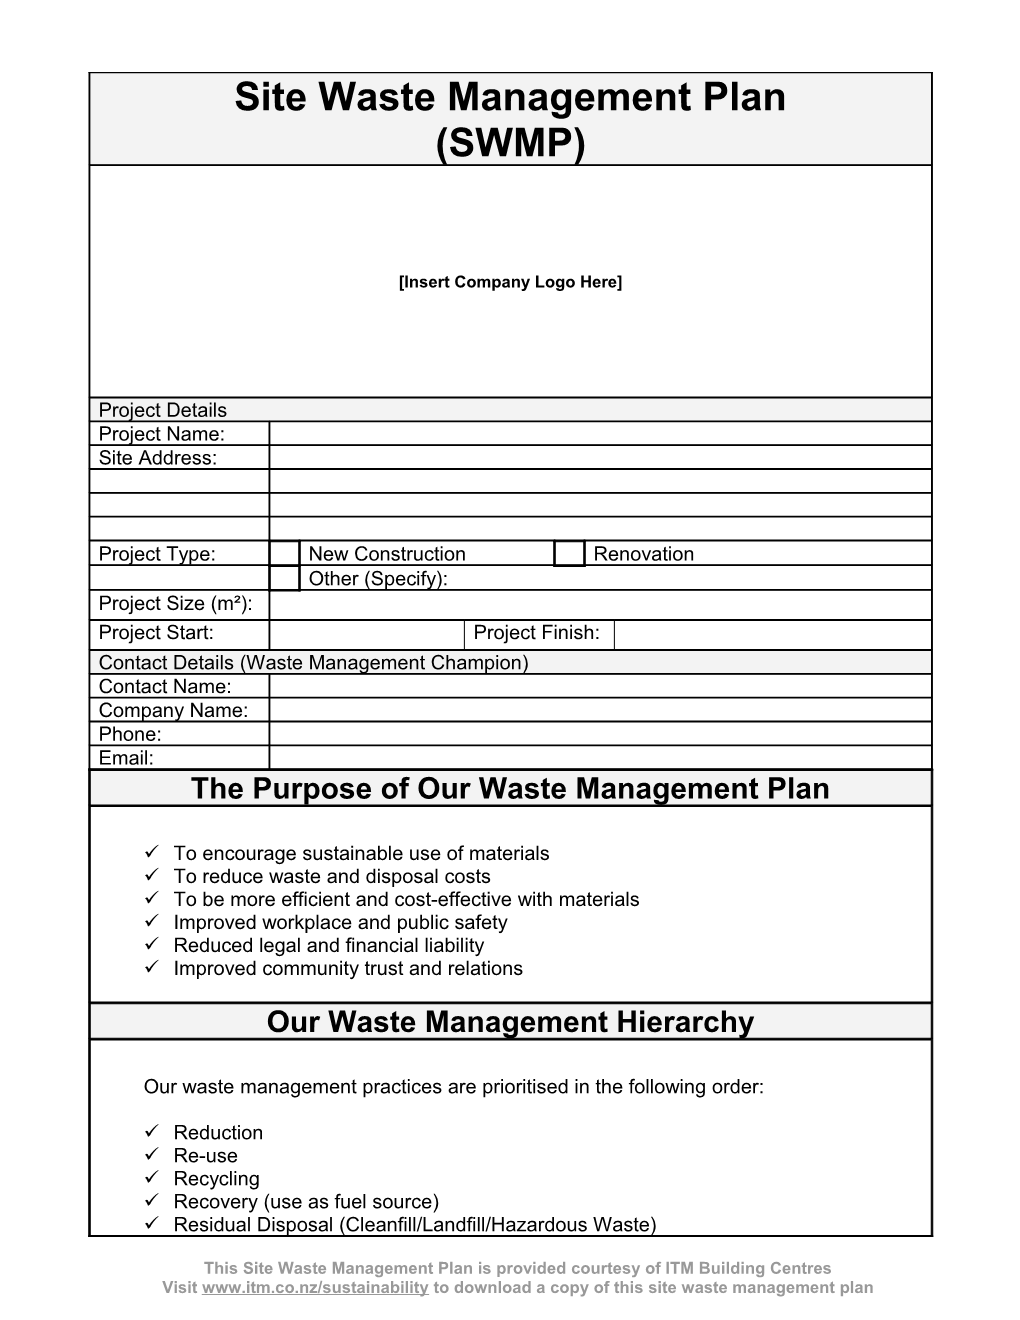 Site Waste Management Plan